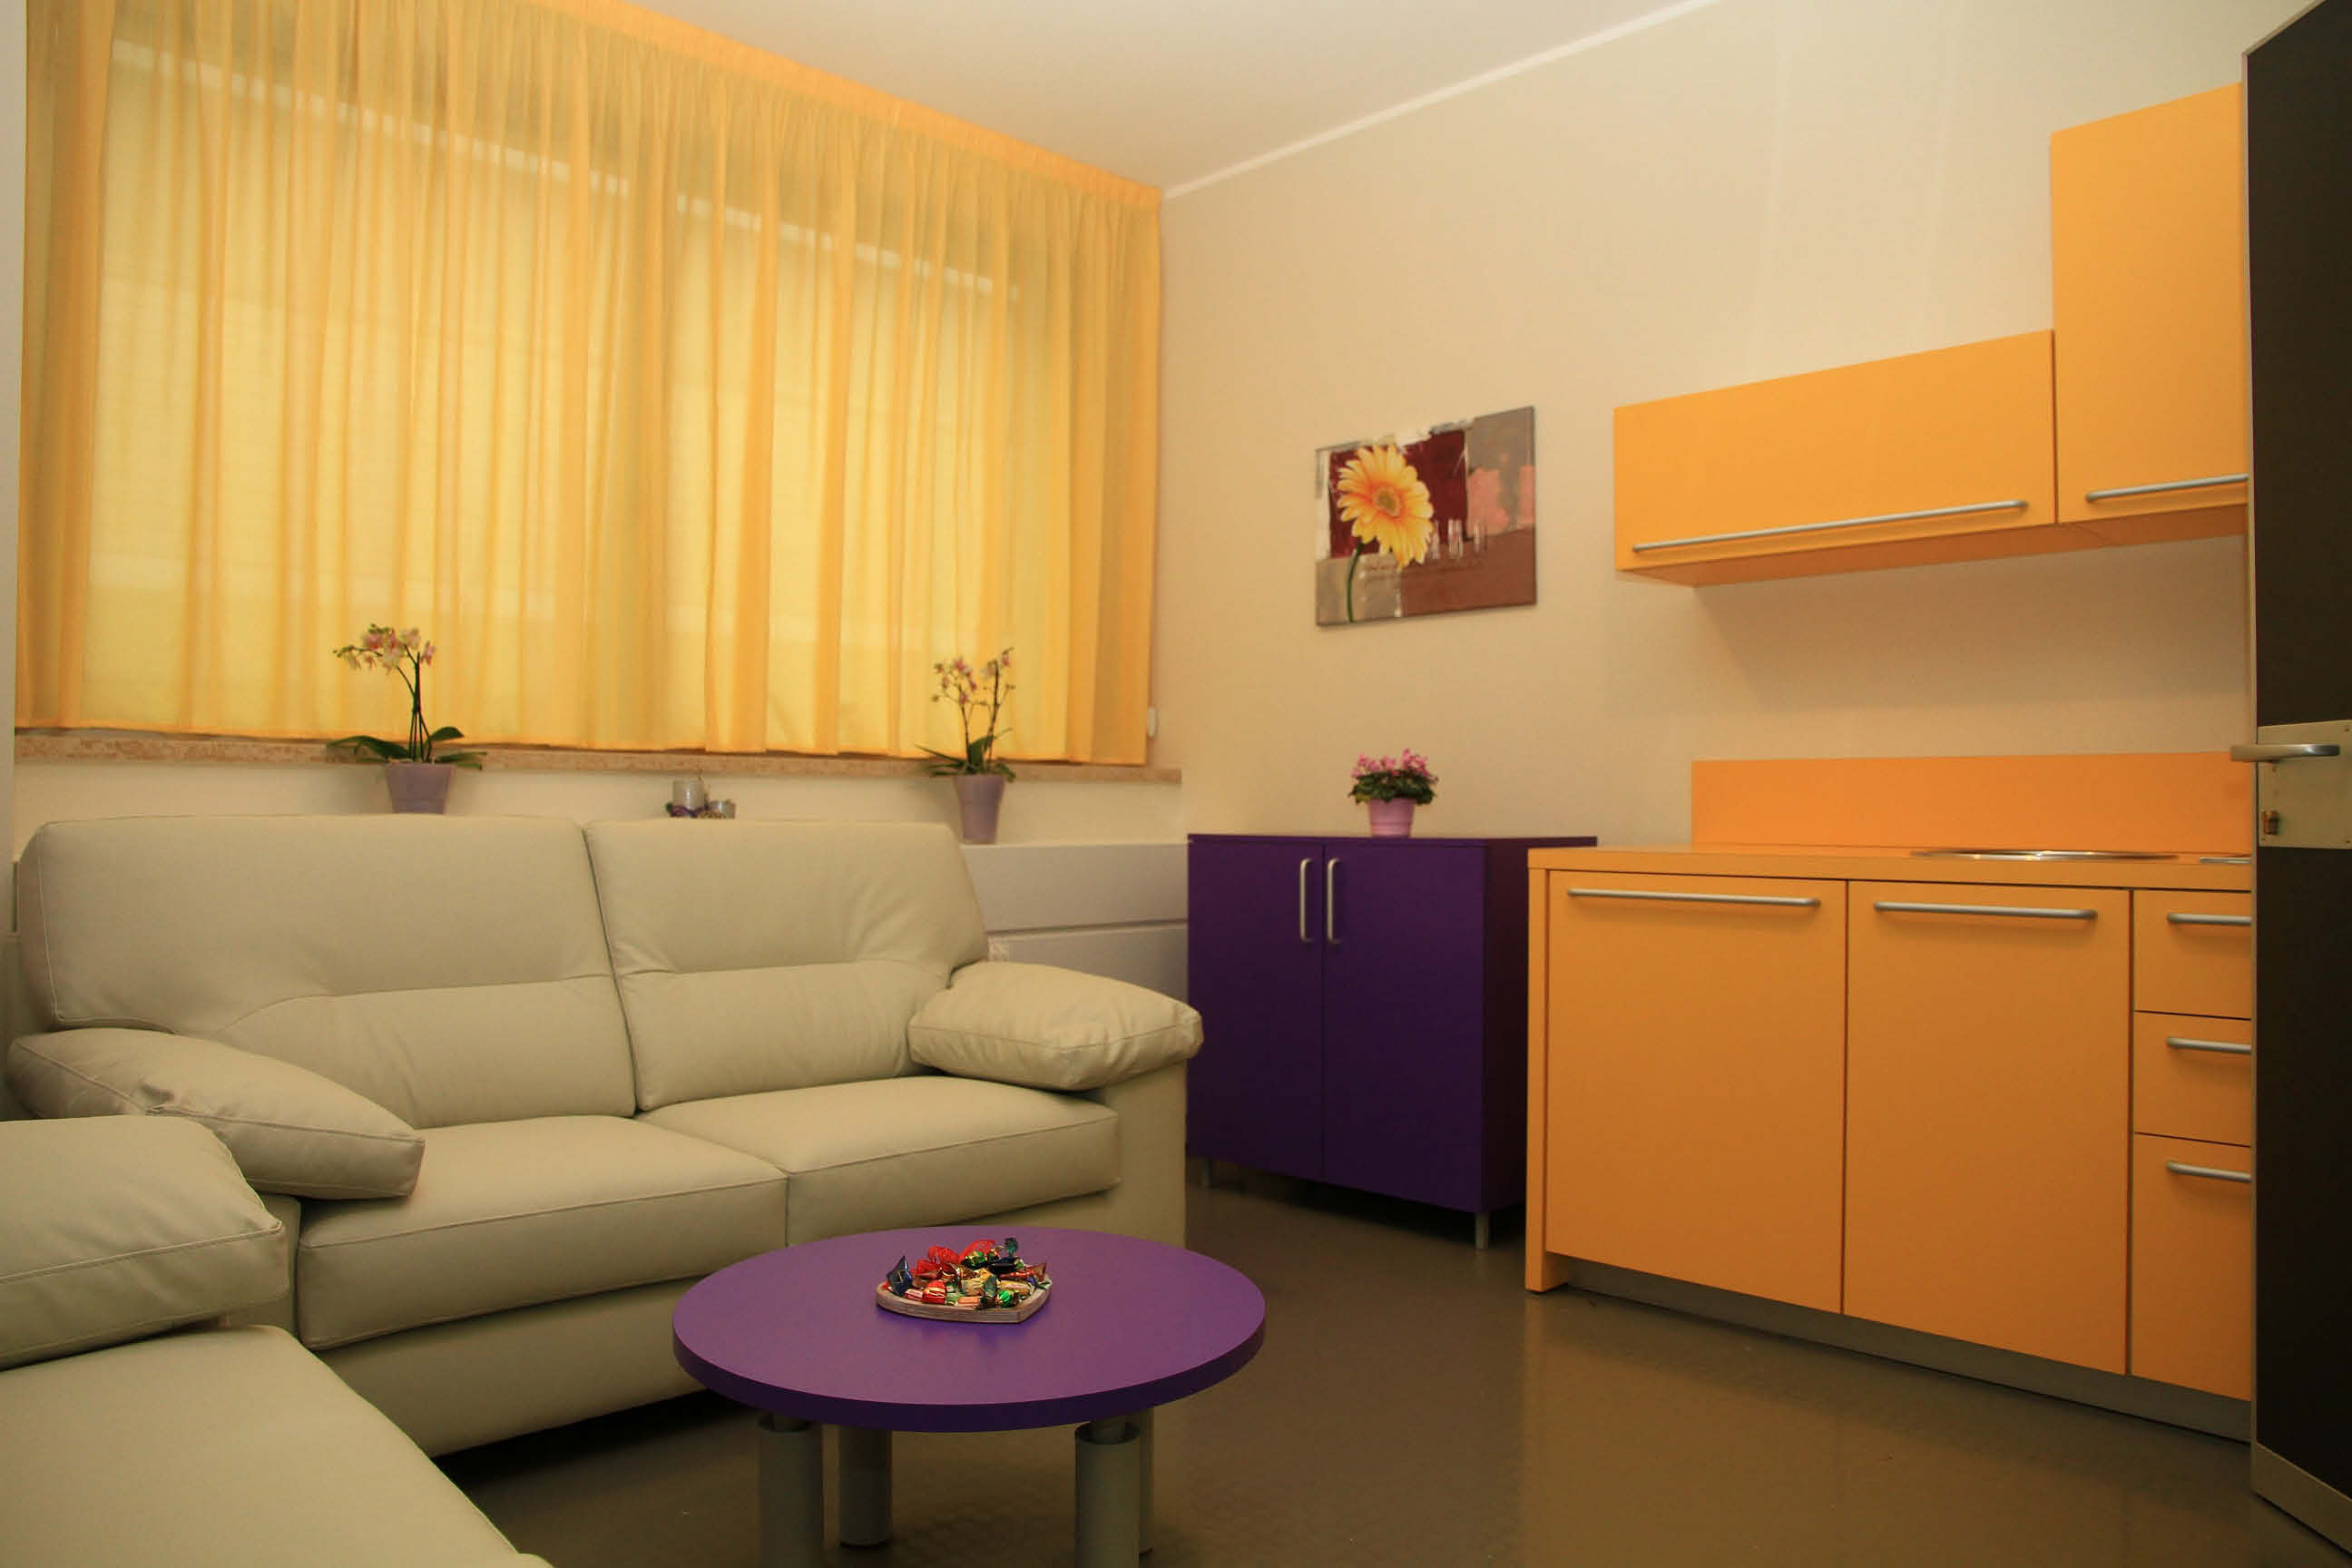 Uno spazio per parlare - la stanza Oasis , arredata dall'associazione Papavero - Mohn&#08233;